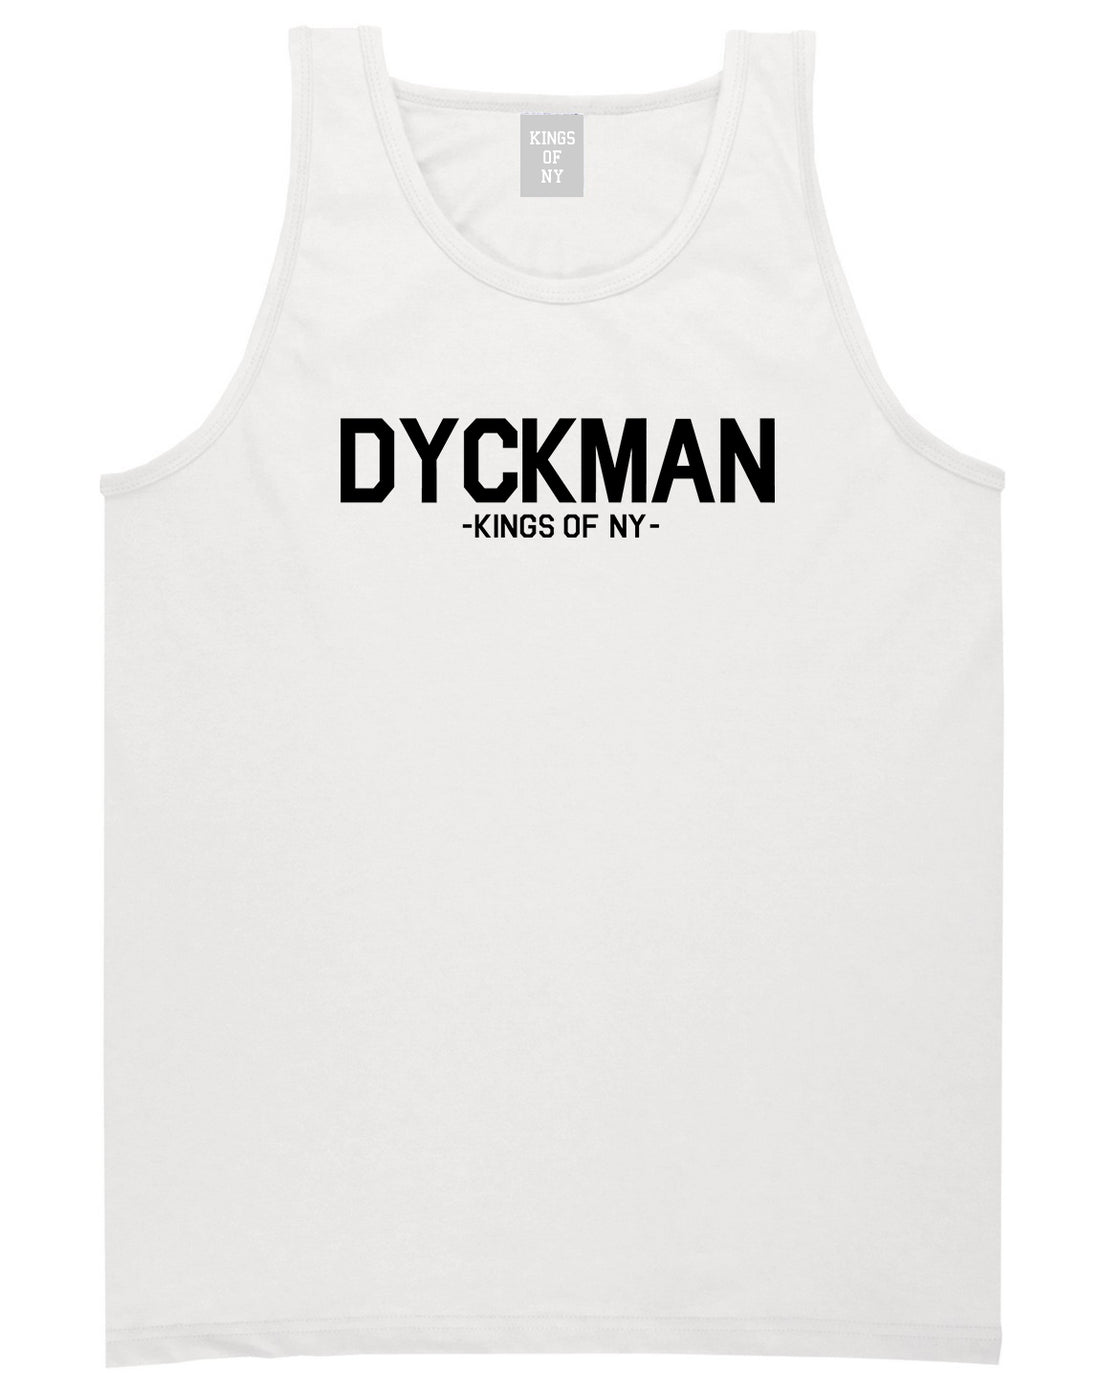 Dyckman Kings Of NY Mens Tank Top Shirt White